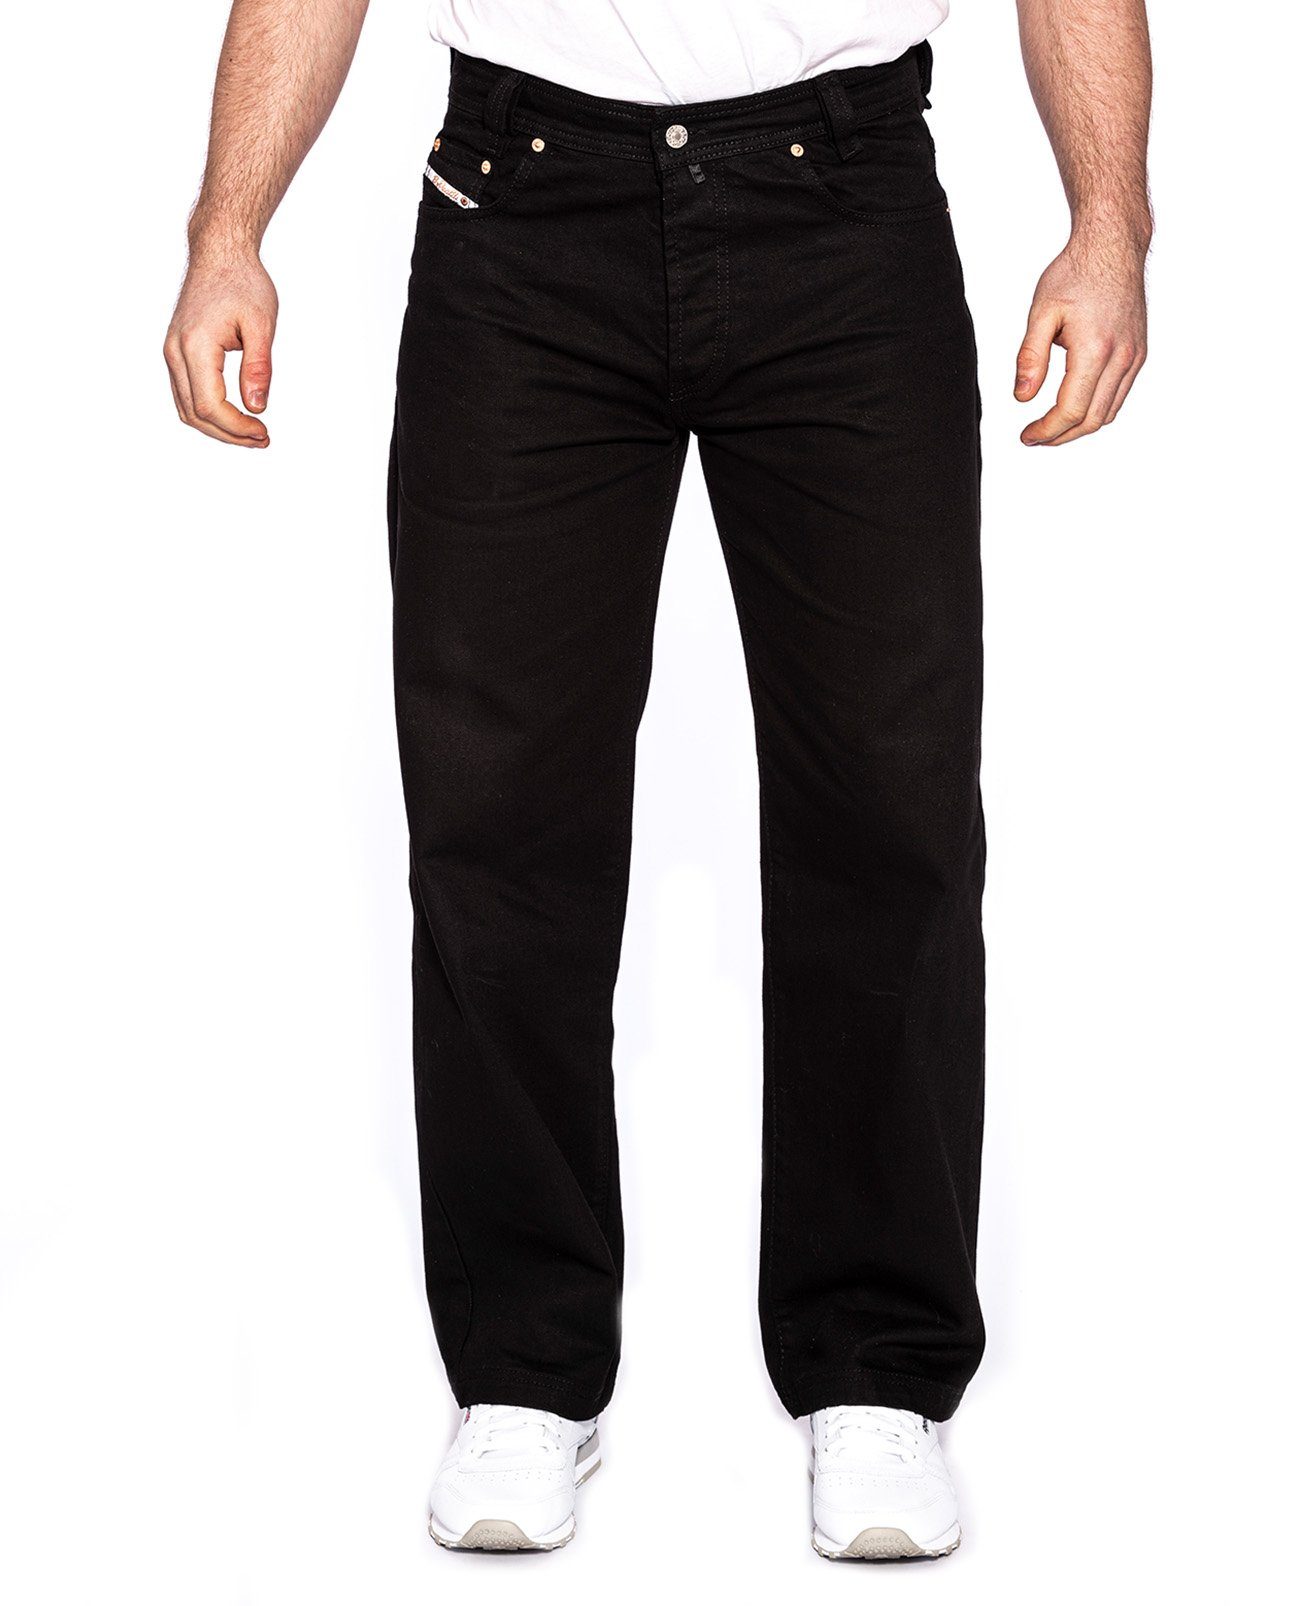 PICALDI Jeans Weite Jeans Zicco 474 Baggy Fit, Straight Leg, Gerader lässiger Schnitt Black | Weite Jeans